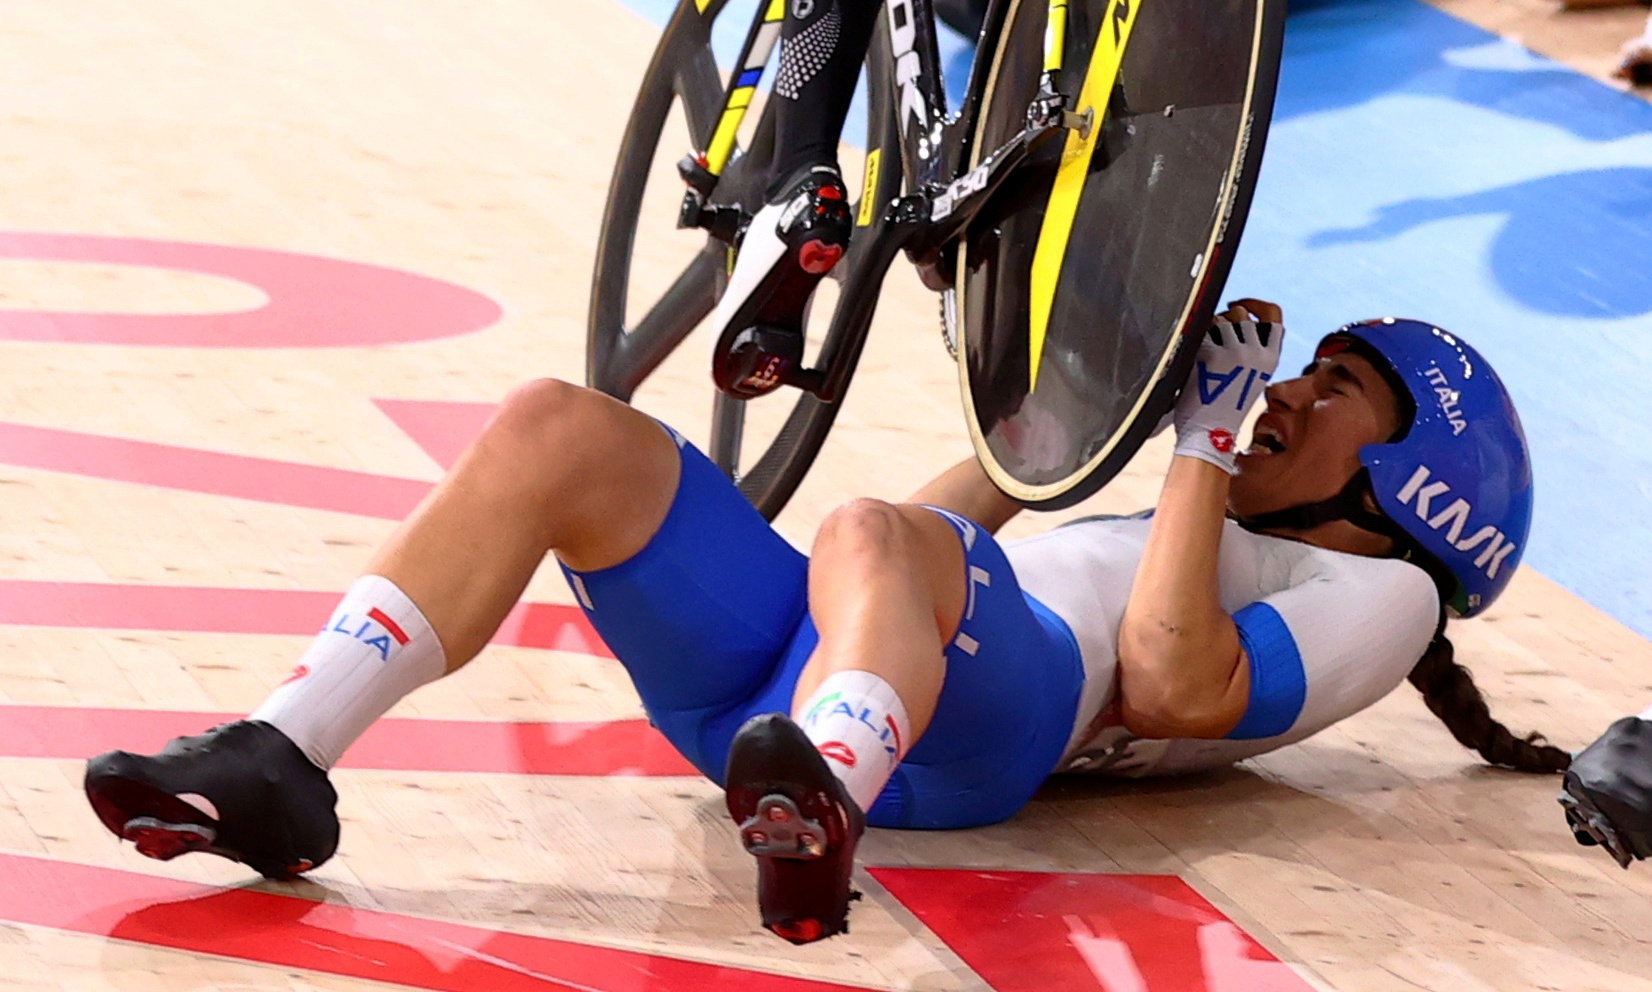 Dramática caída en el ciclismo pista de los Juegos Olímpicos que involucró a 9 participantes: a una atleta le pasó una bicicleta por encima de su cuerpo